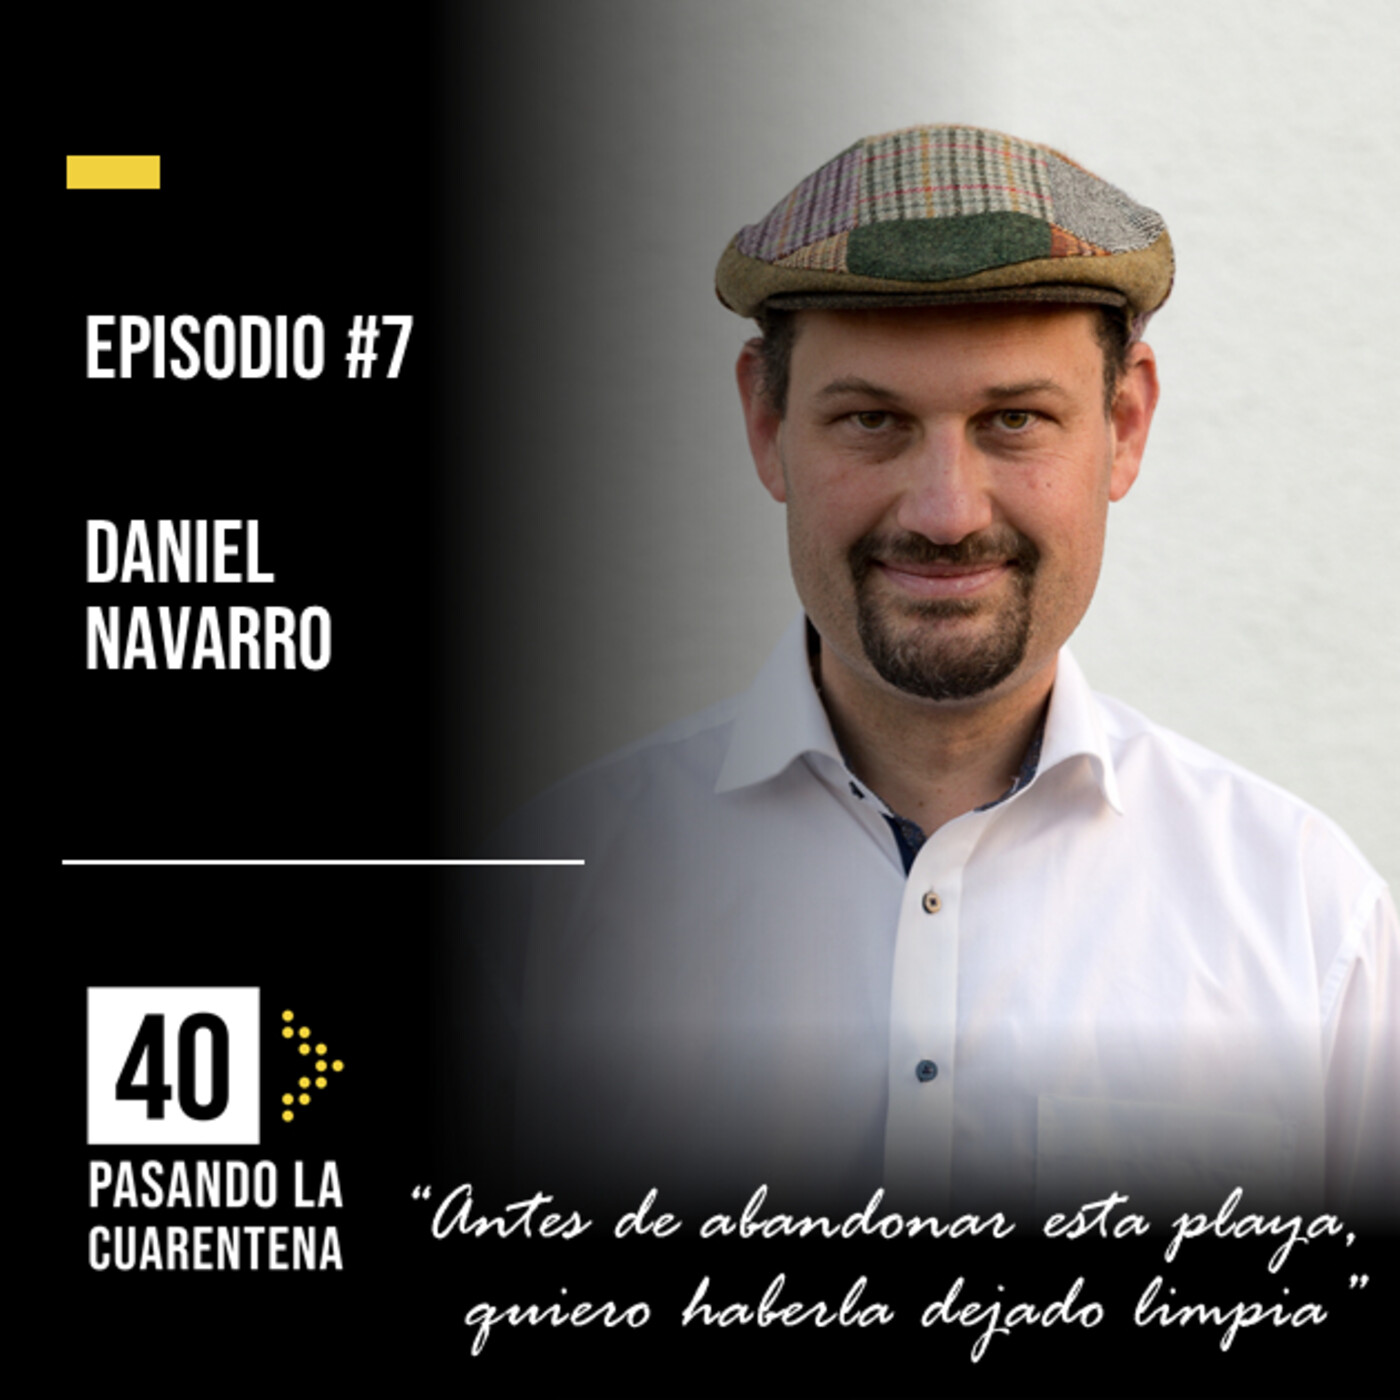 #7 Daniel Navarro: "Antes de abandonar esta playa, quiero haberla dejado limpia"